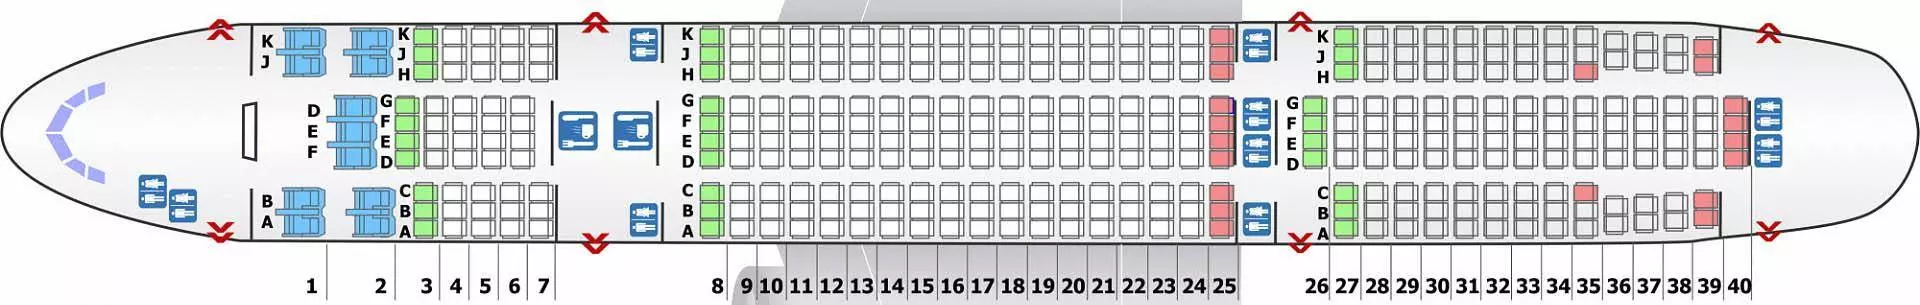 Самолет ан-24: нумерация мест в салоне, схема посадочных мест, лучшие места, фото